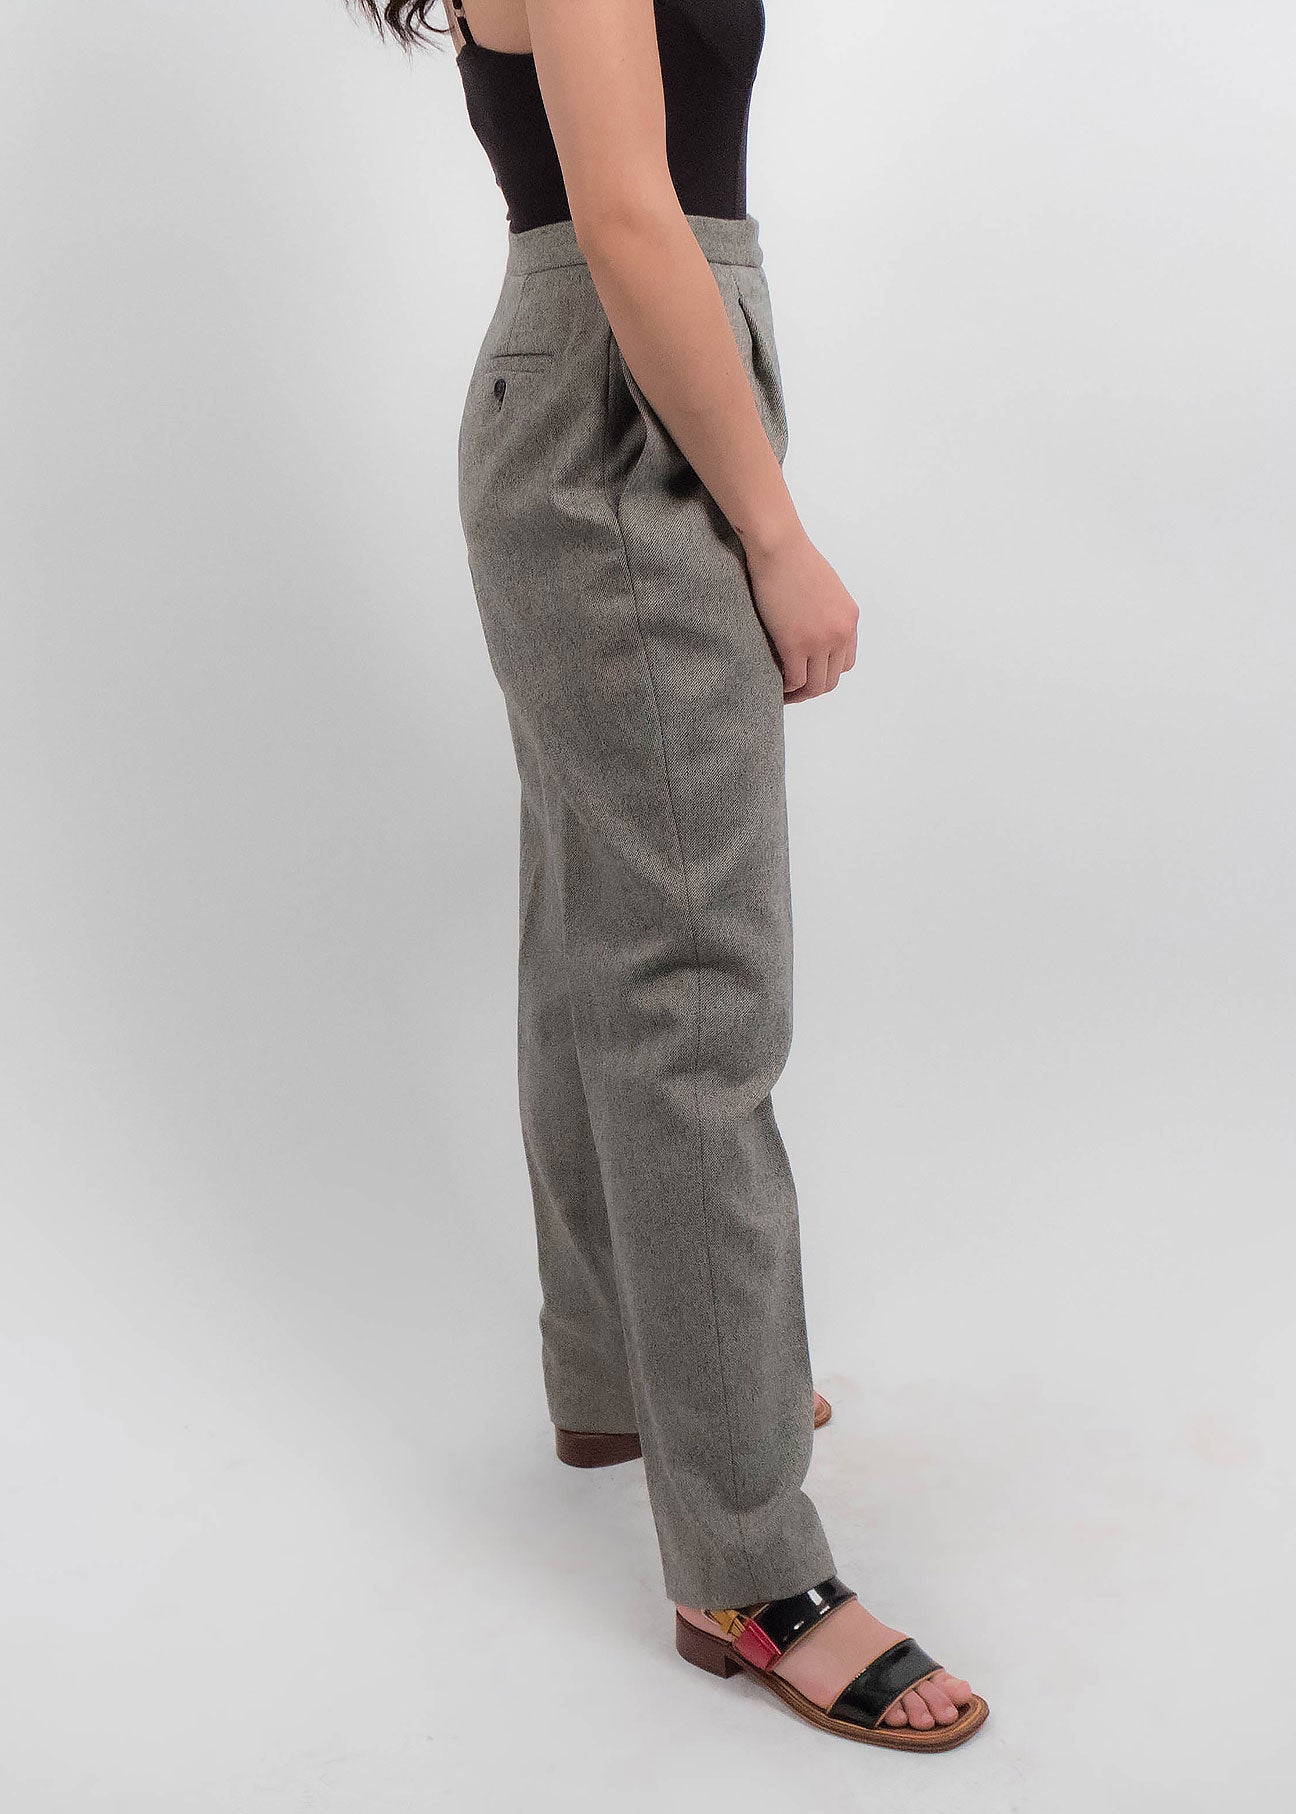 90s Ralph Lauren Wool Pants